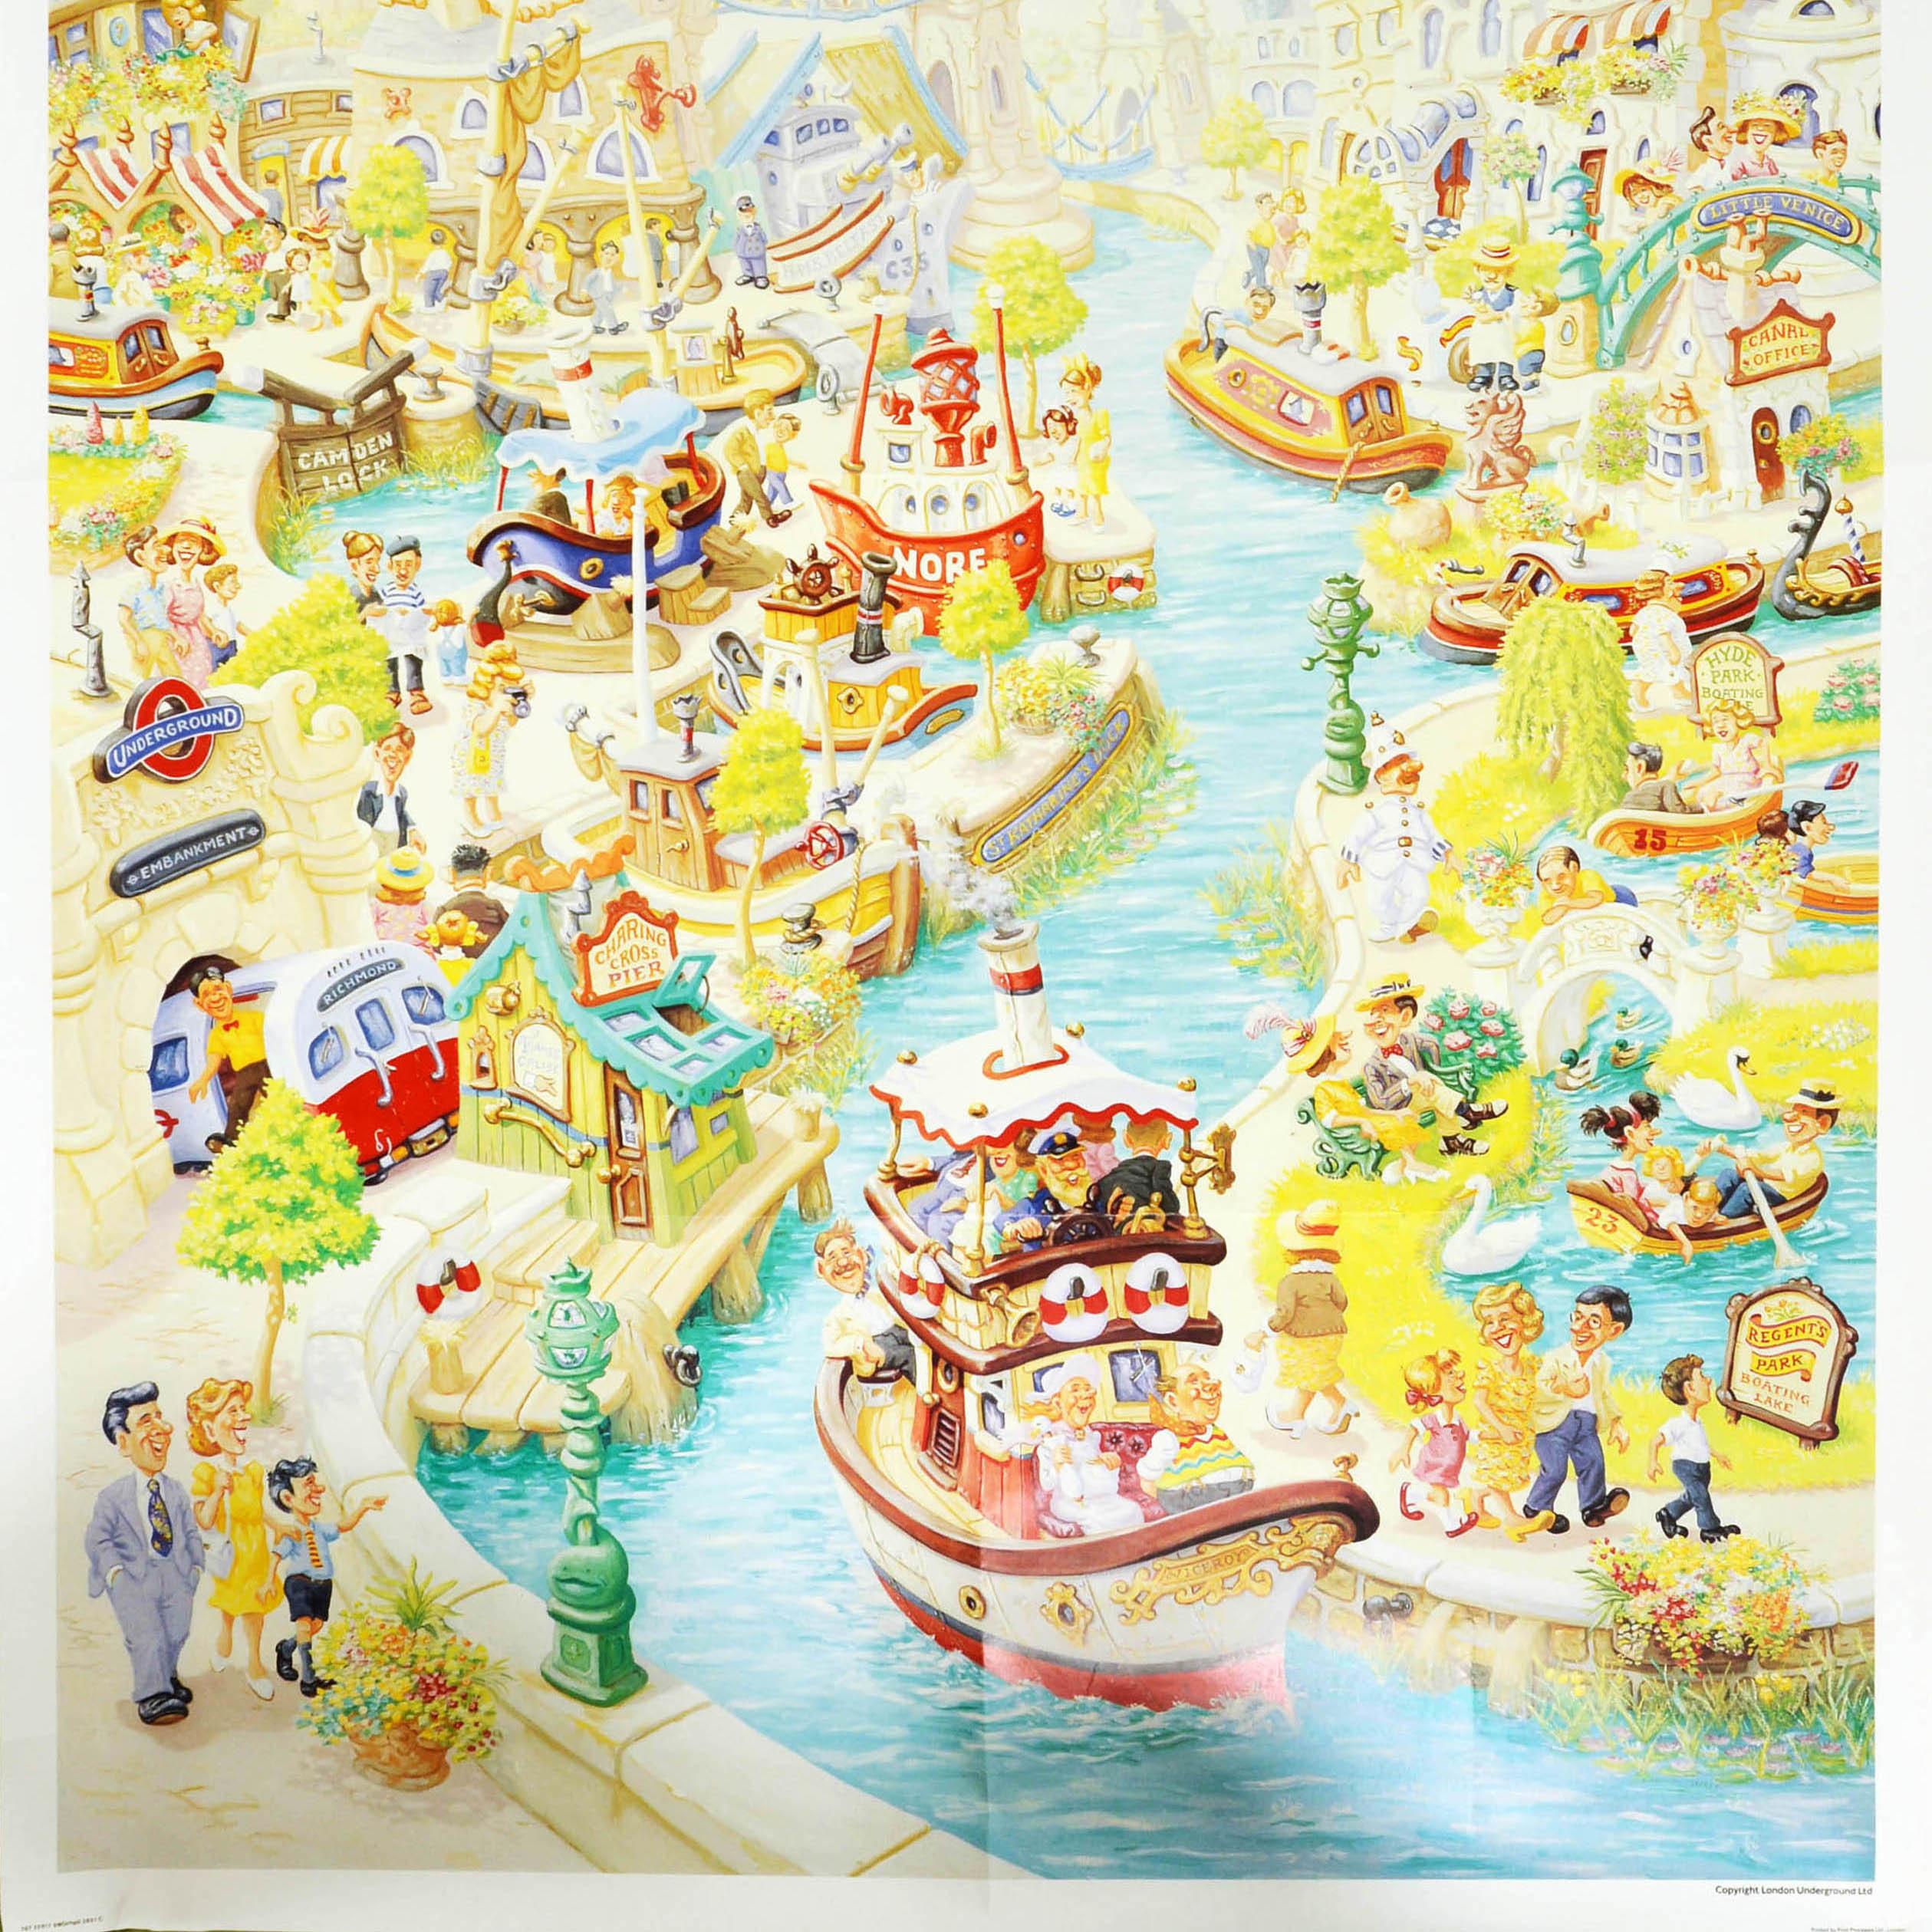 Affiche originale vintage du métro de Londres - Catch the boat by Tube - avec des illustrations colorées du peintre britannique Charles Shiels (1947-2012) représentant des scènes le long de la Tamise, notamment des bateaux sur l'eau et une rame de